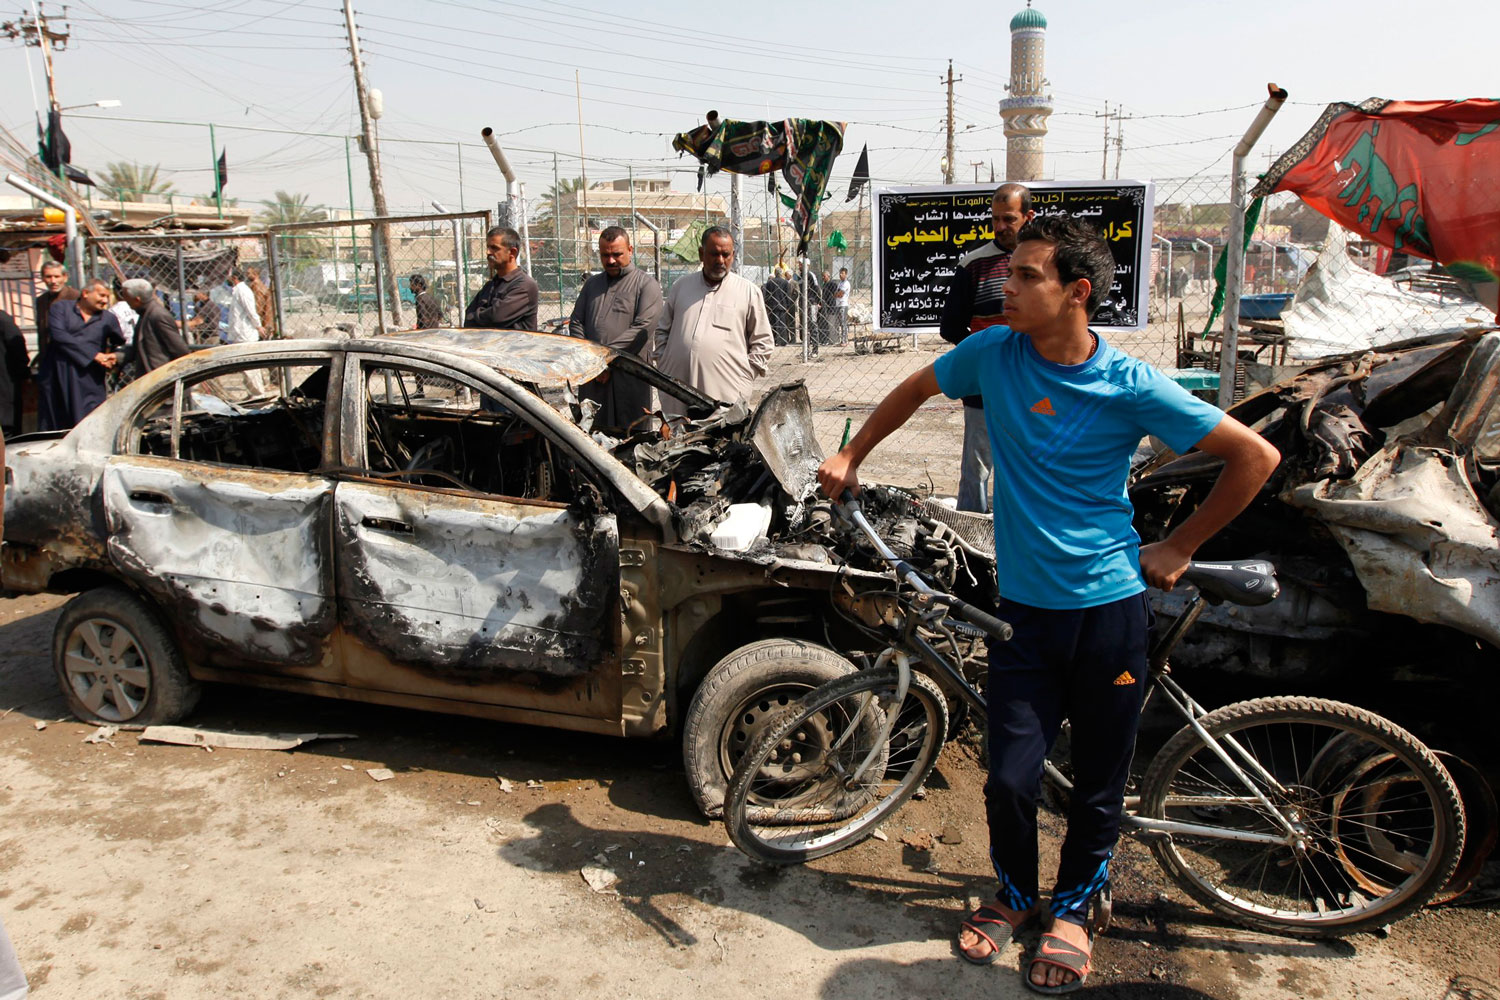 18 muertos y 54 heridos en una cadena de atentados en Irak